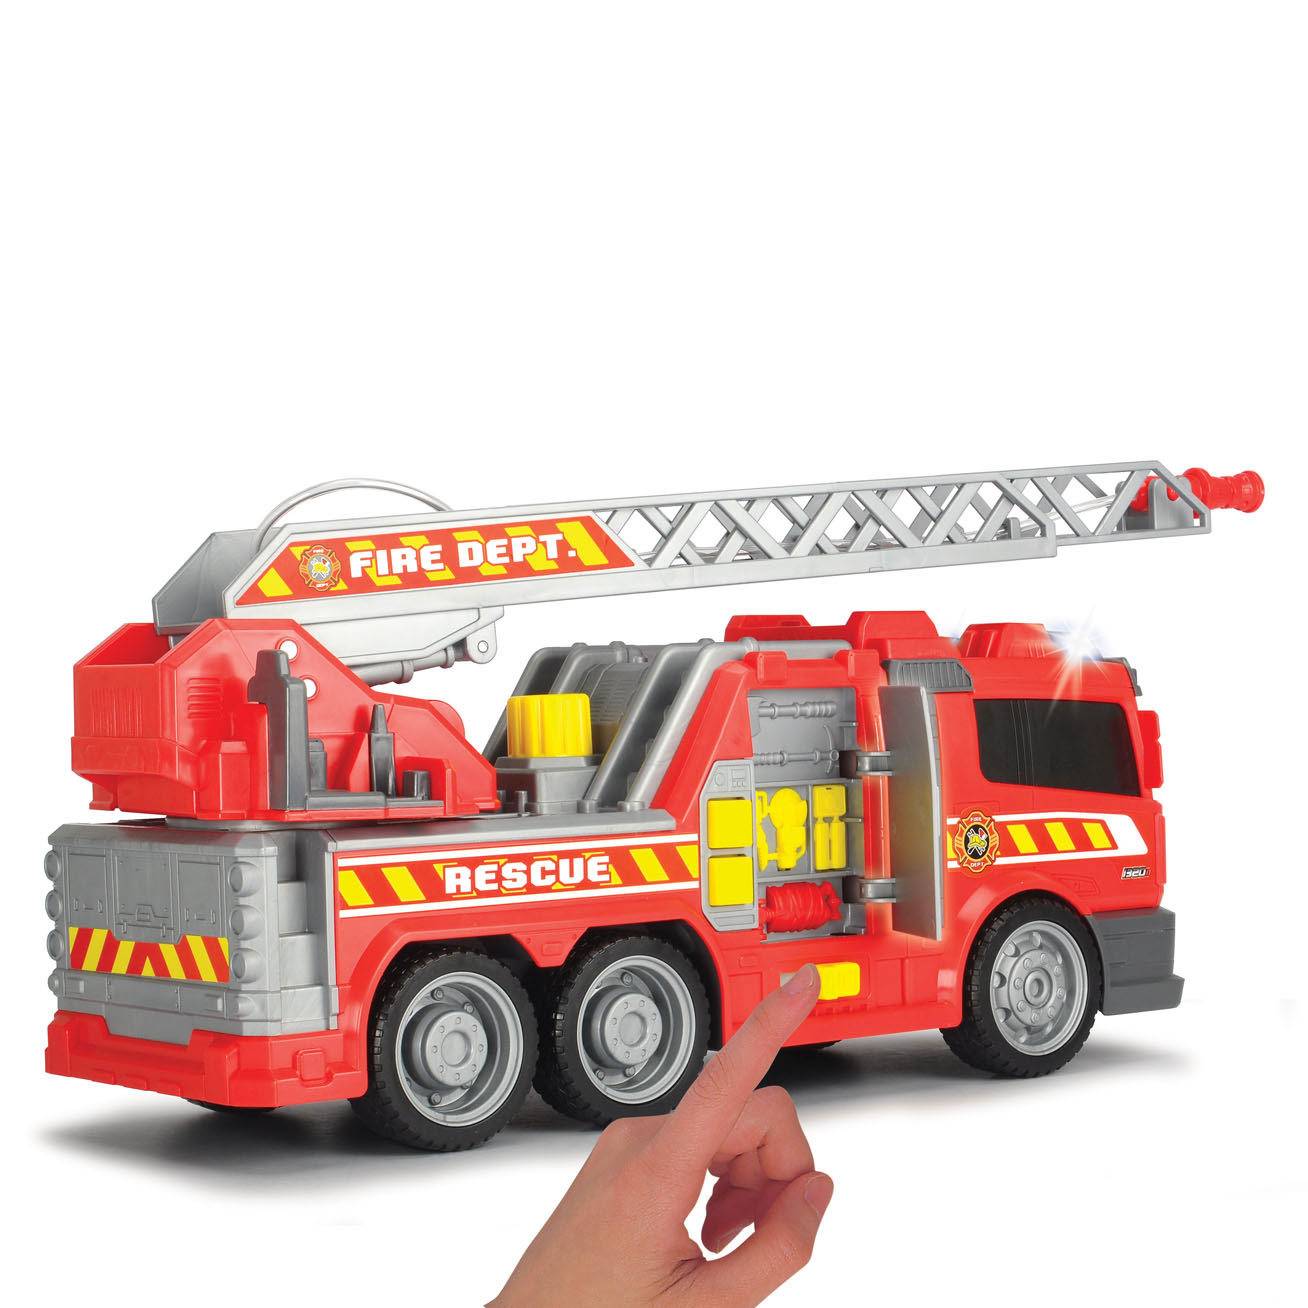 Camion de pompiers Dickie avec pompe à eau